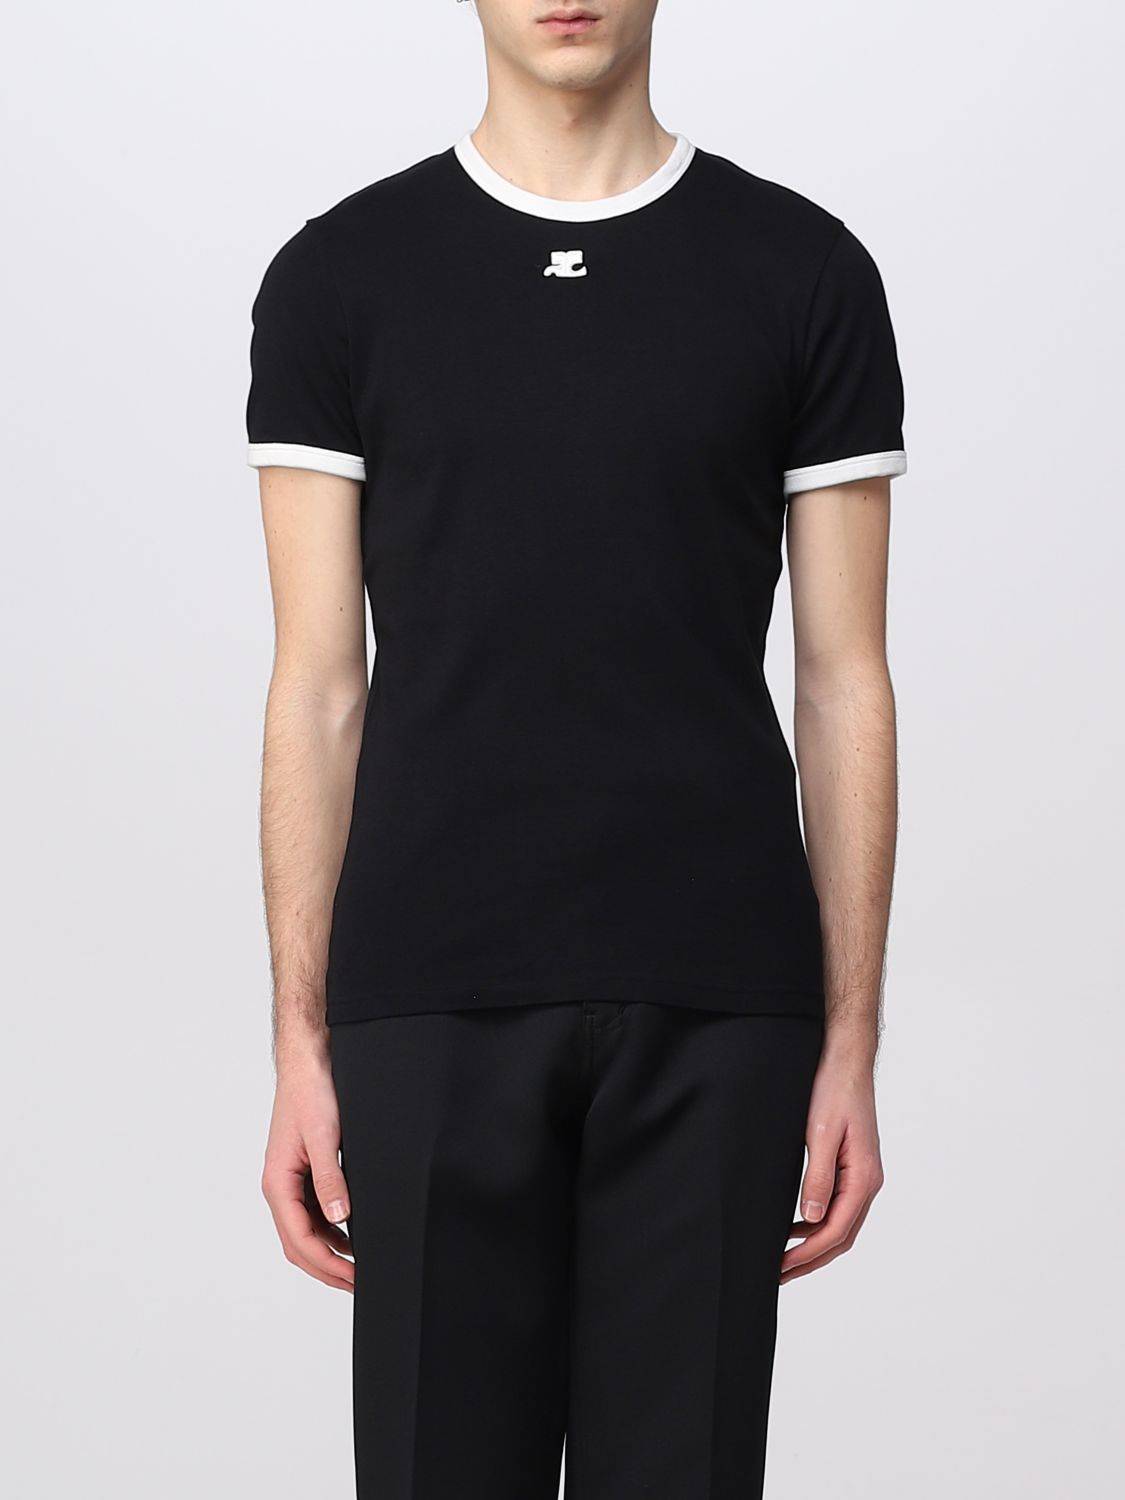 COURRÈGES: t-shirt for man - Black | Courrèges t-shirt PERJTS020JS0070 ...